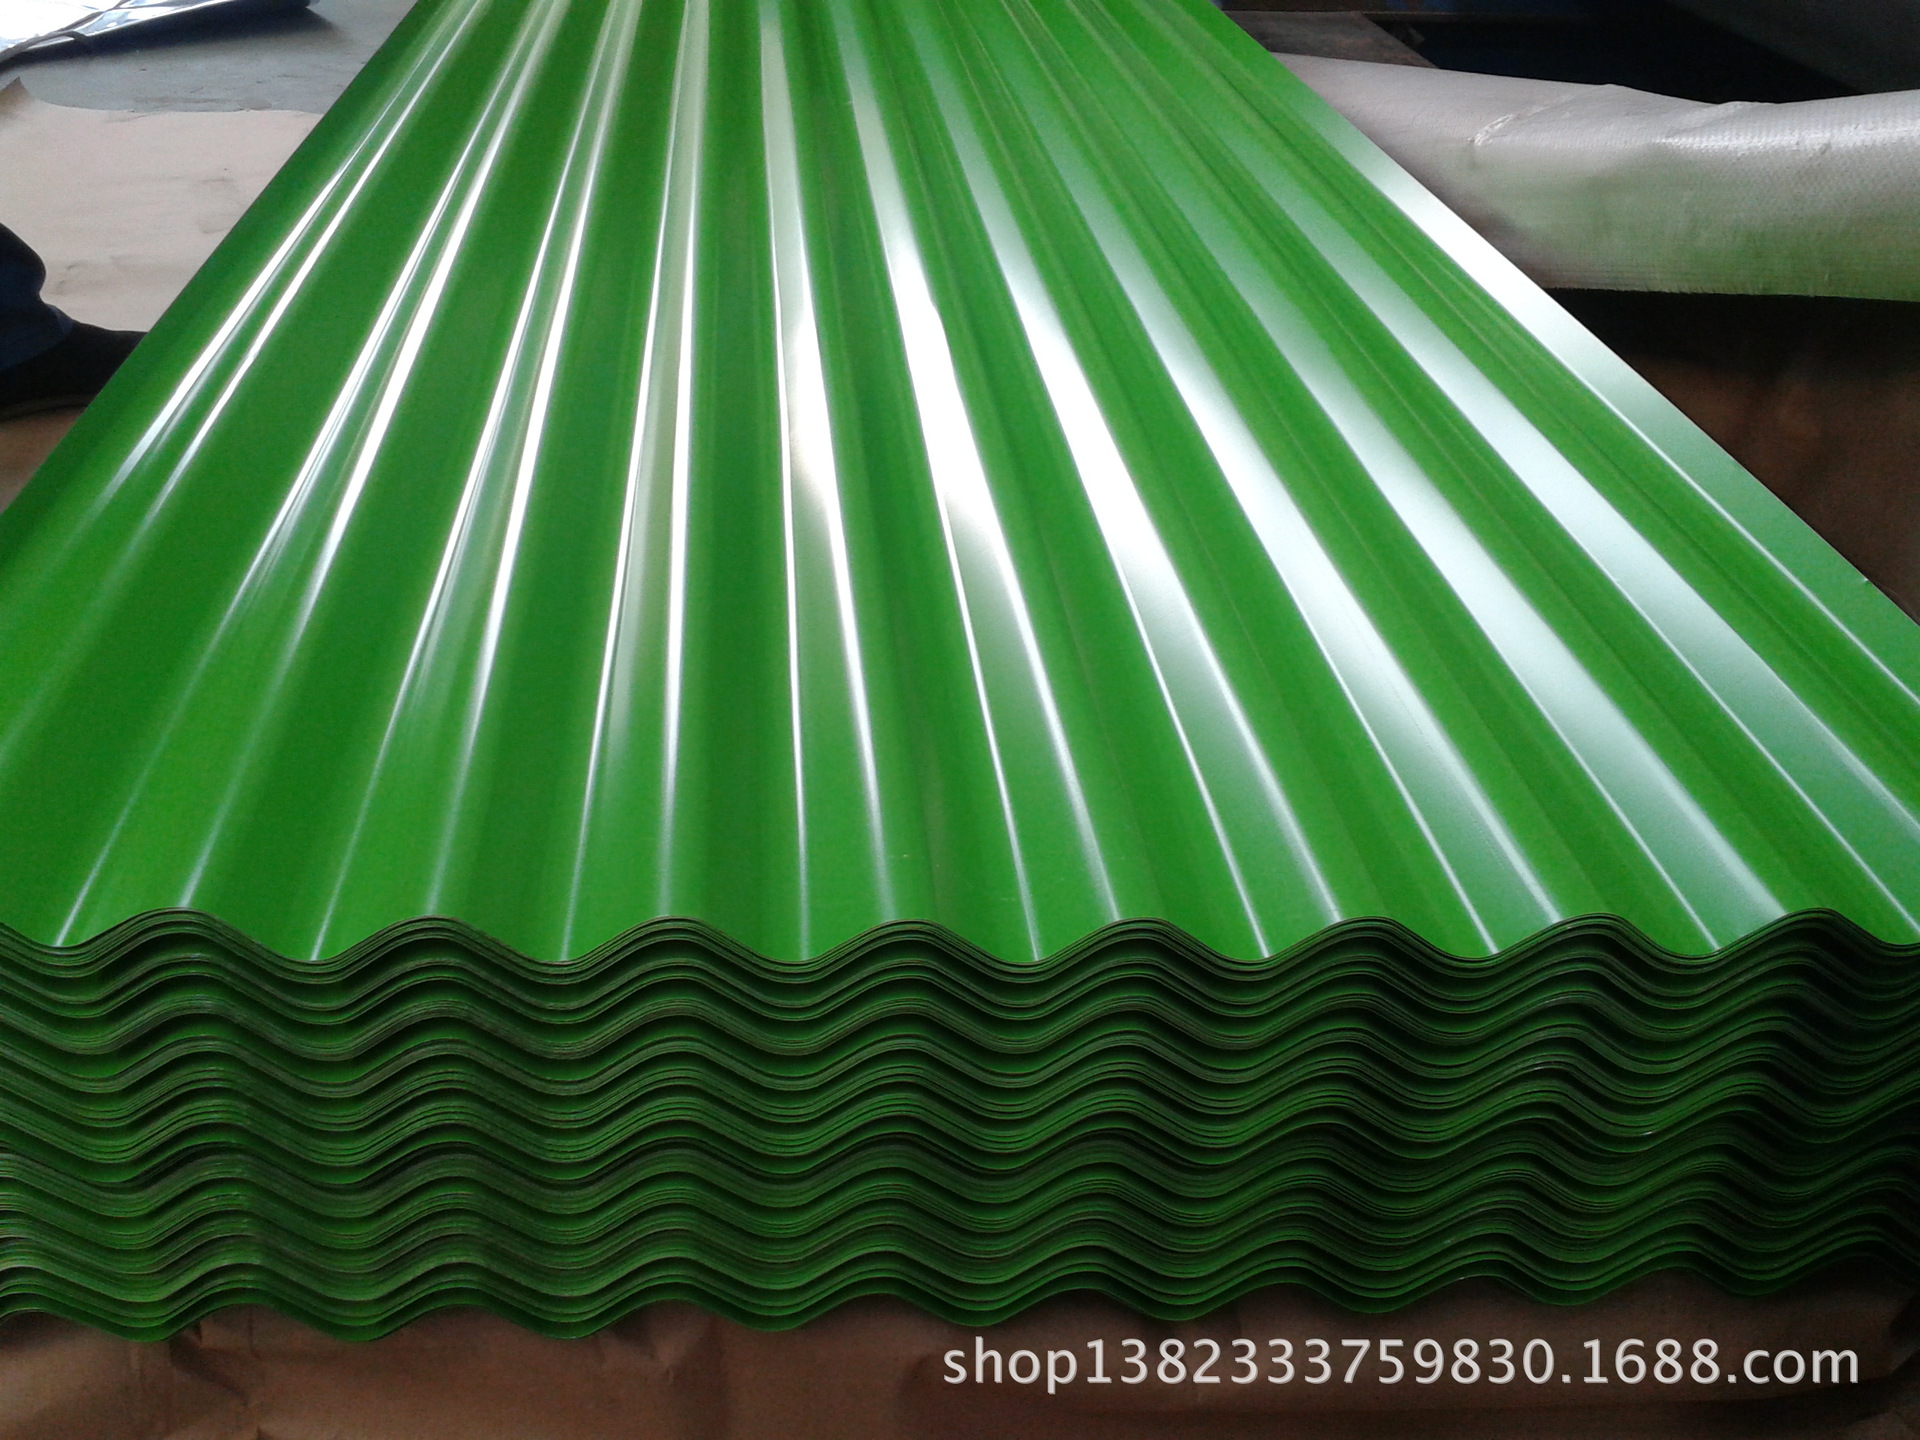 Bobine d'acier galvanisé prépeint de couleur bobines et feuilles d'acier galvanisé enduites de couleur PPGI pour tuiles